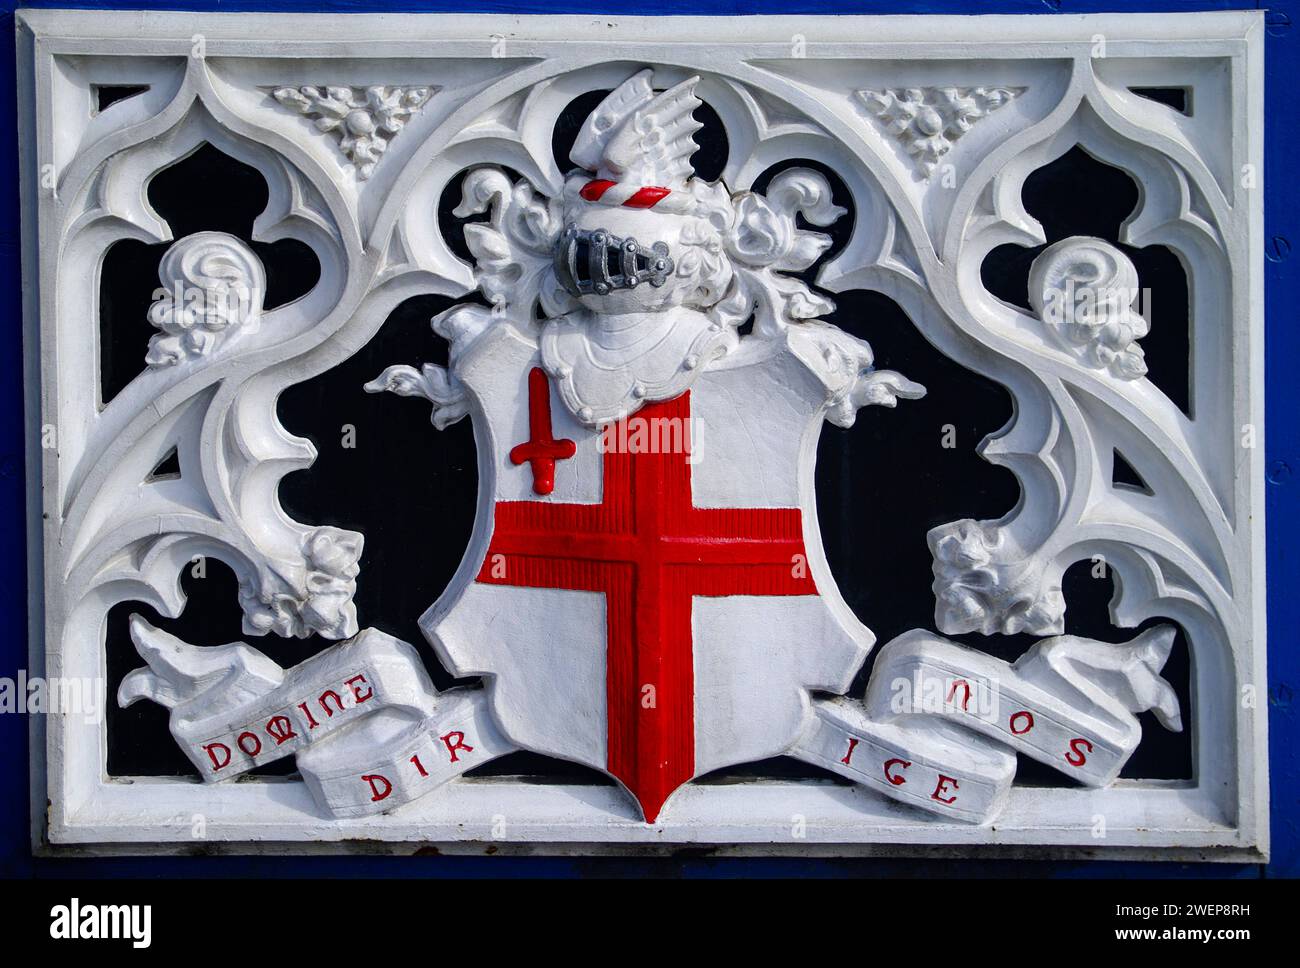 Londra: Berühmte Brücke - Die Tower Bridge. - Das Wappen an einem der berühmtesten Bauwerke Londons. Die 1894 eröffnete Brücke überspannt Die Themse A. Foto Stock